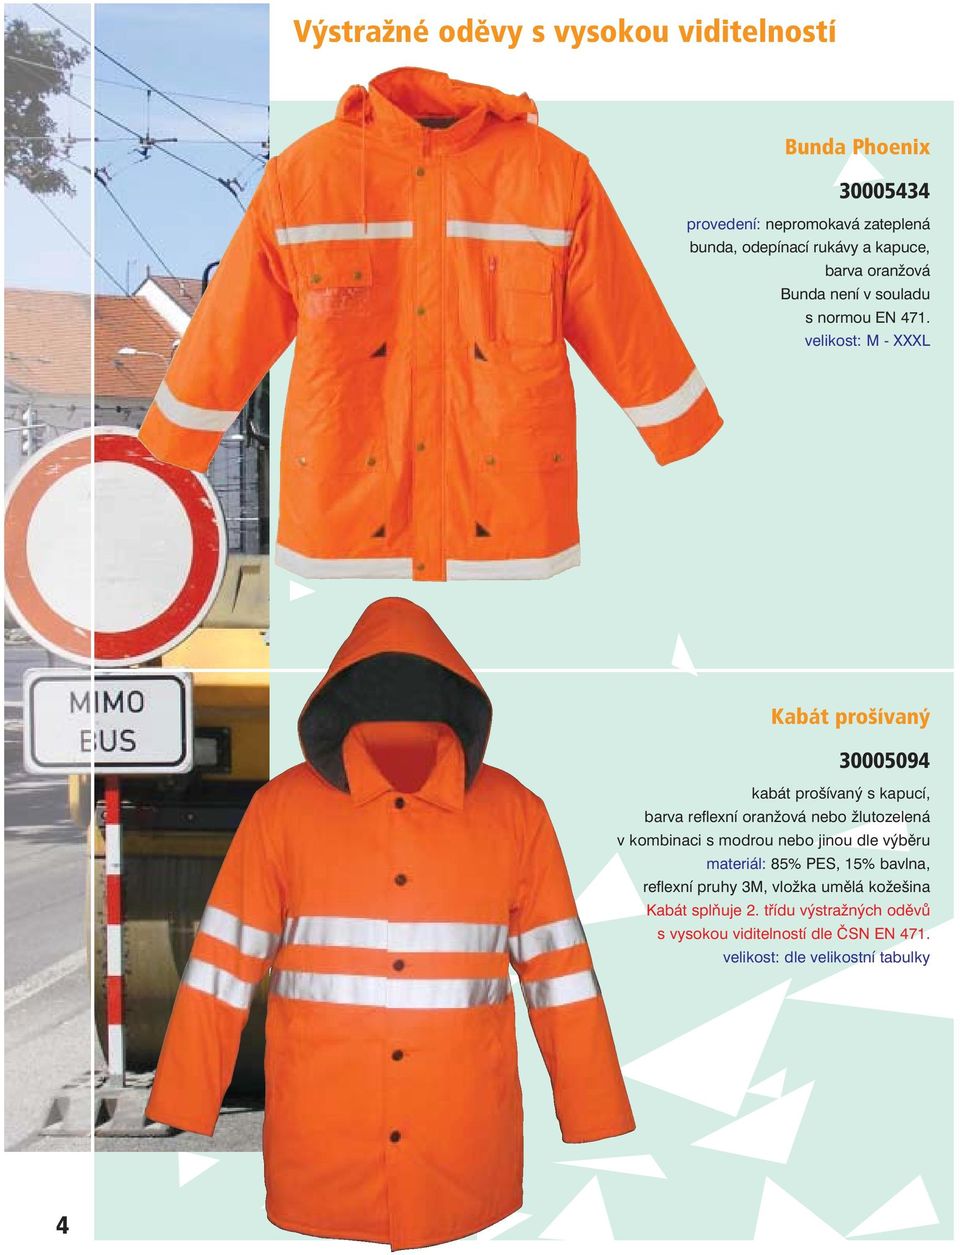 velikost: M - XXXL Kabát pro ívan 30005094 kabát pro ívan s kapucí, barva reflexní oranïová nebo Ïlutozelená v kombinaci